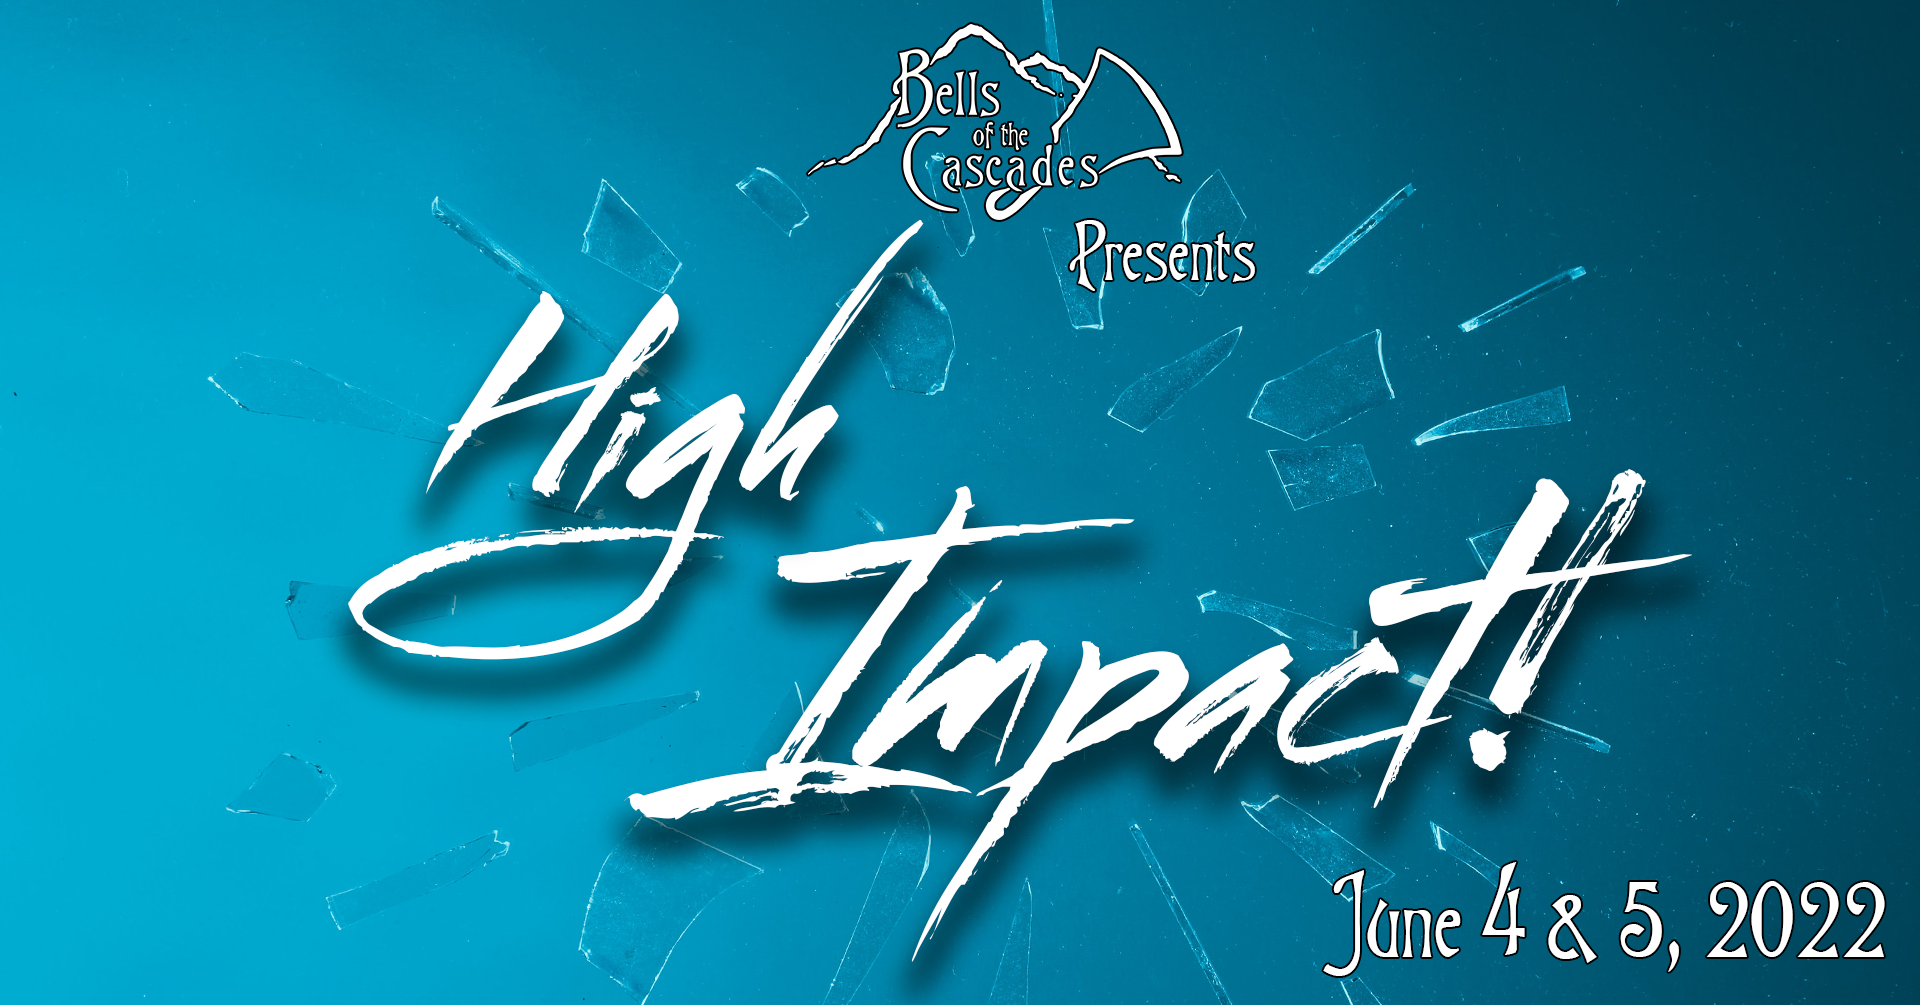 High Impact! handbell concert